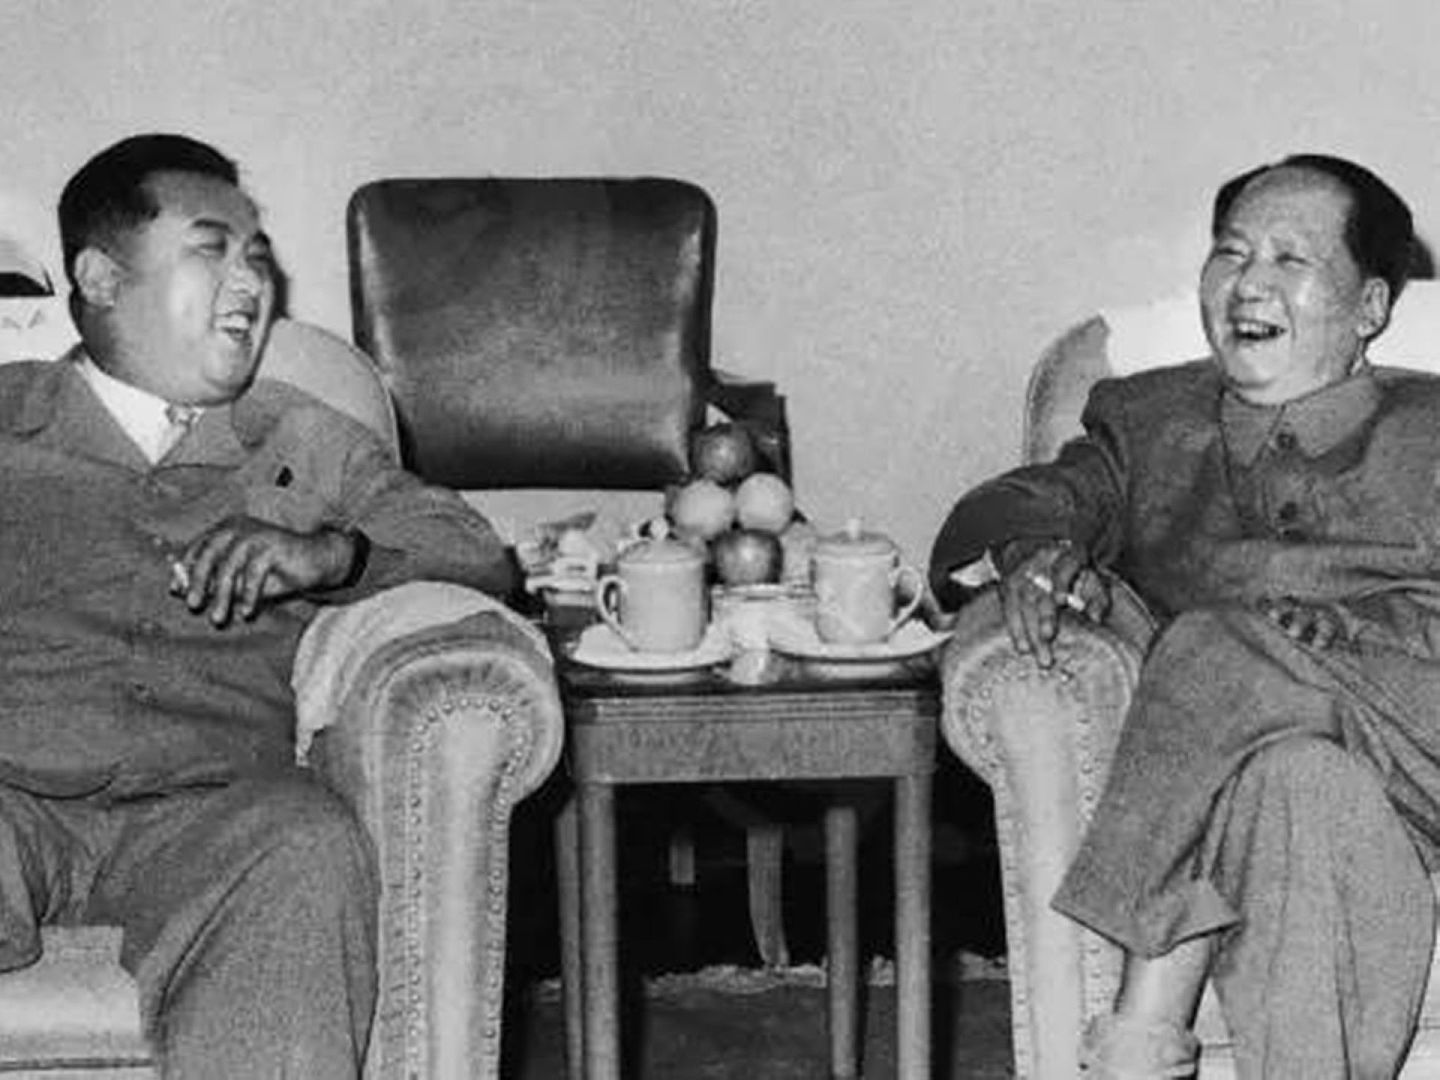 金日成（左）长期被韩国与欧美视为朝鲜战争的祸首，但在中国与朝鲜的视角来看，美国与李承晚政府的挑衅亦是激化战争的因素，不容片面忽略。此为1961年金日成访华与毛泽东晤面的情景。（吕厚民）